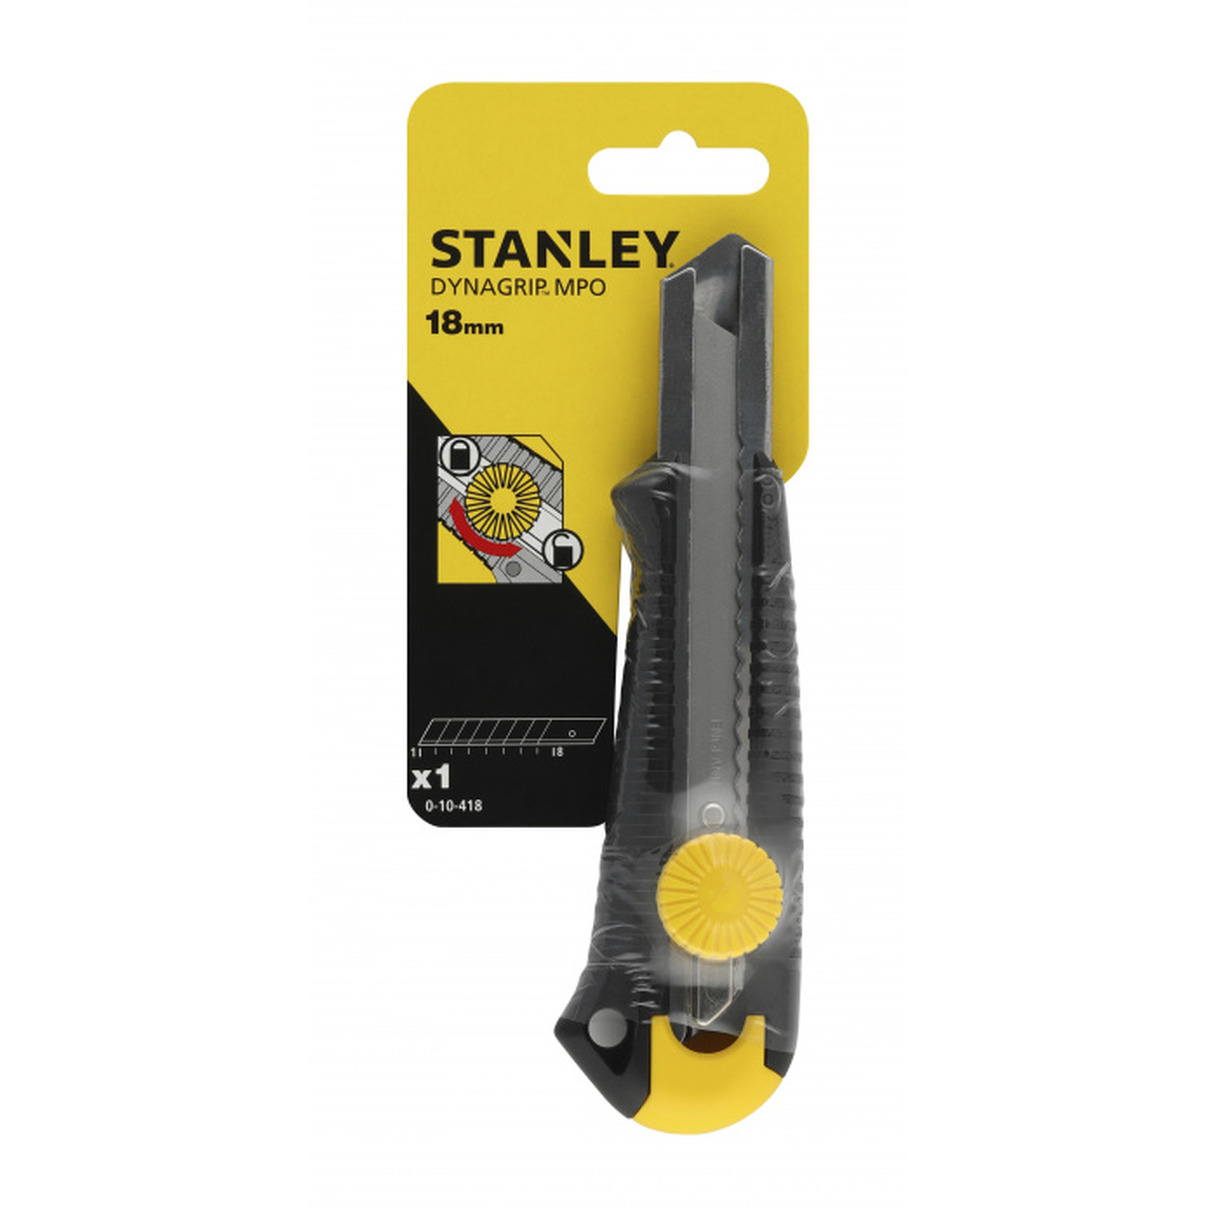 монтажный нож stanley dynagrip 0 10 418 18 мм Нож Stanley Dynagrip Mpo 18мм вращ.прижим 0-10-418